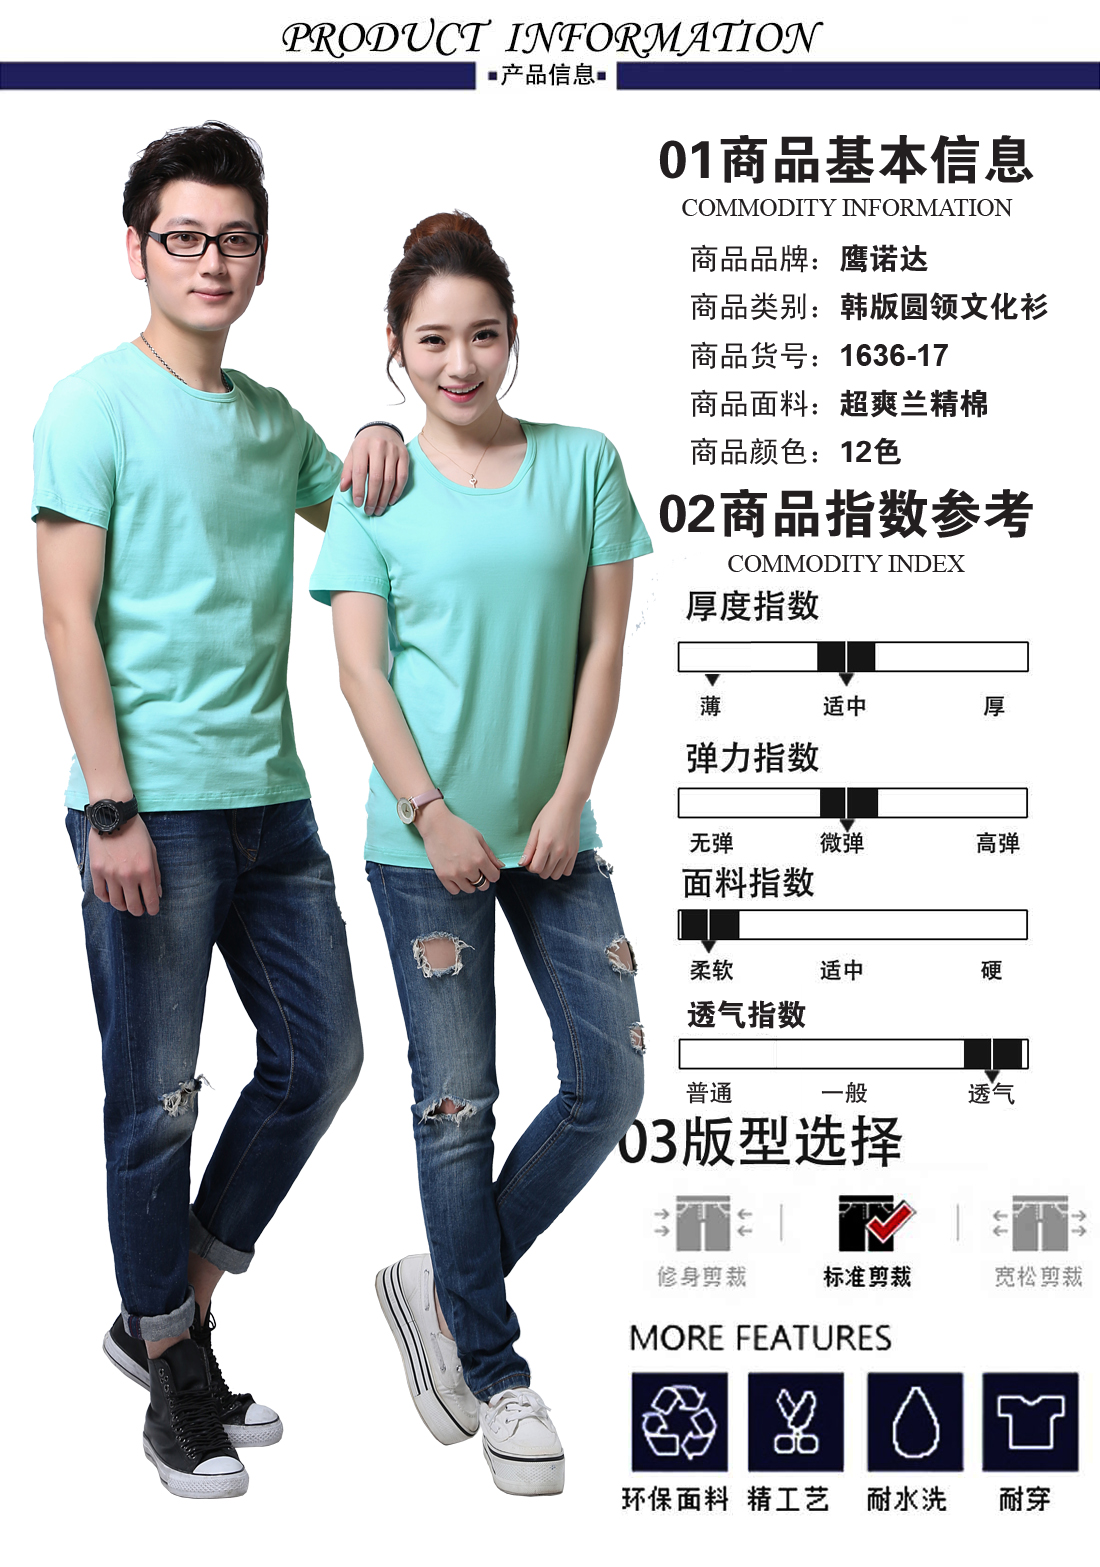 短袖t恤衫厂家的基本信息、指数参考、版型选择